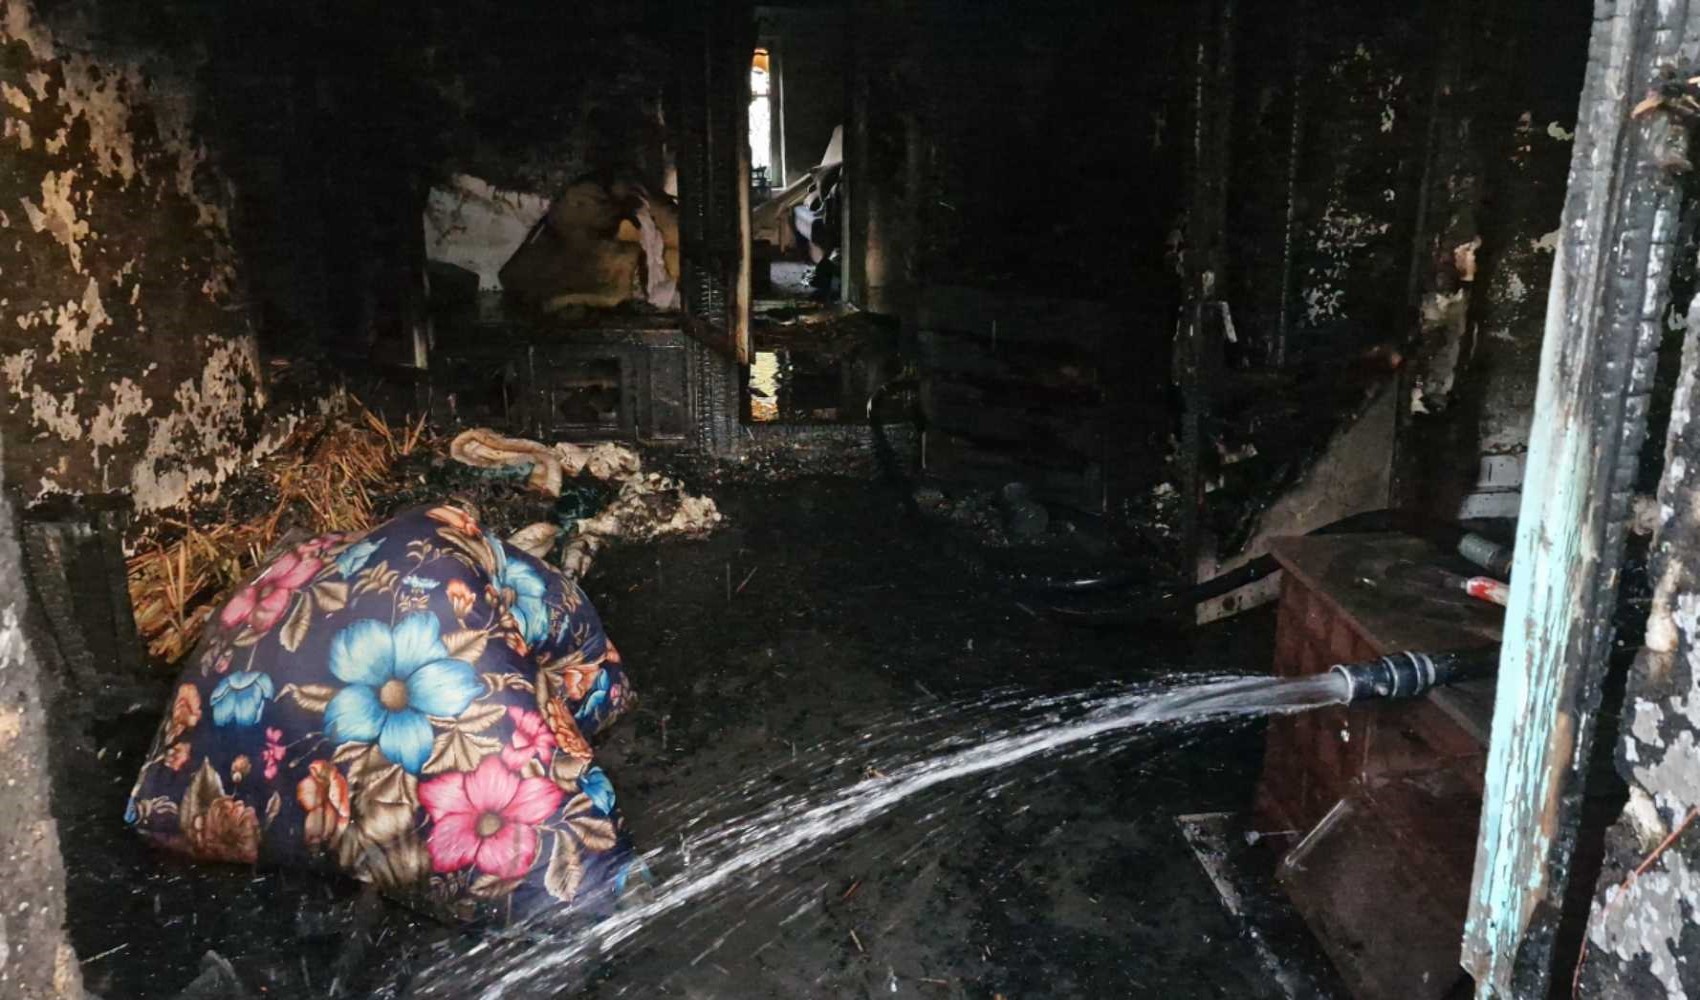 Ev sahibine kızan öfkeli kiracı evi ateşe verdi